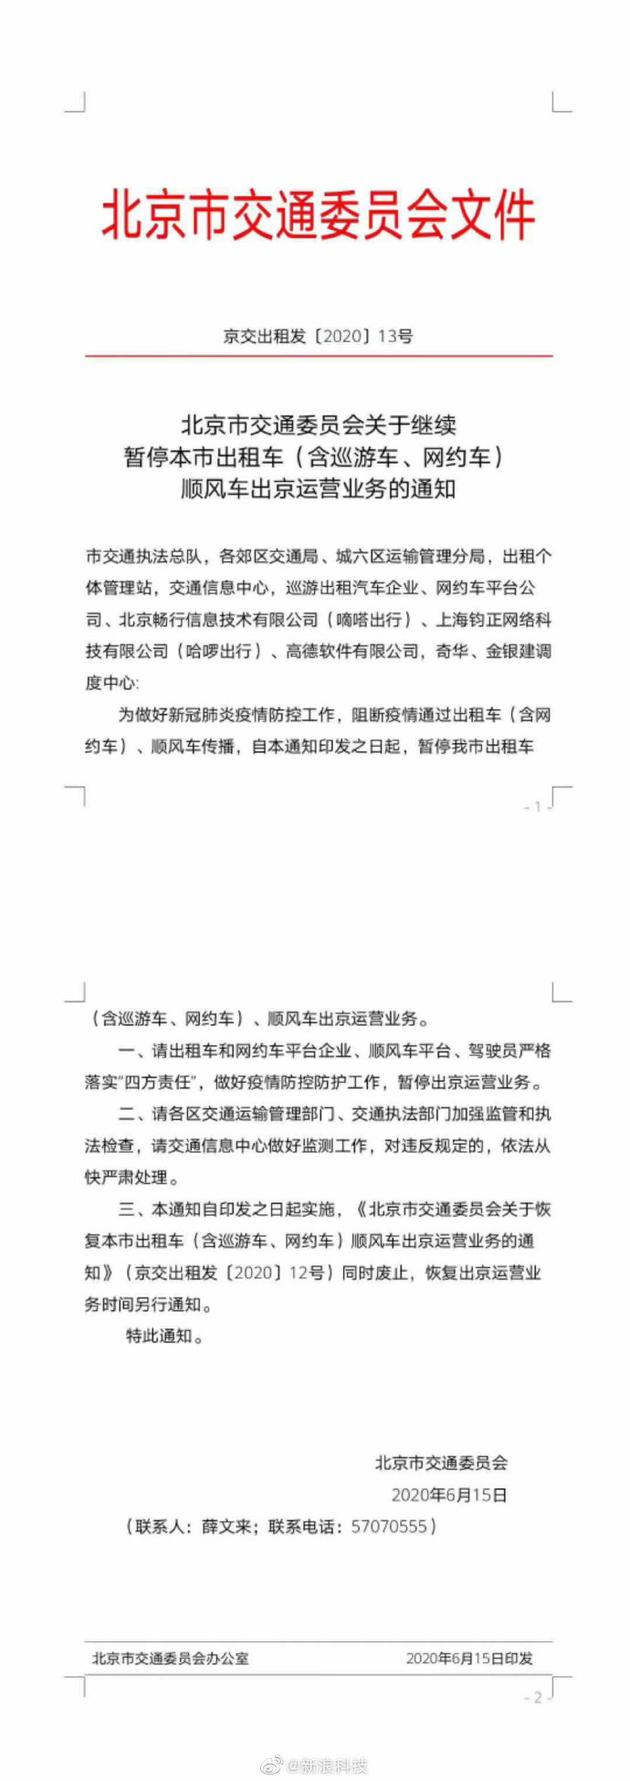 北京市交通委员会：暂停本市出租车、顺风车出京运营业务